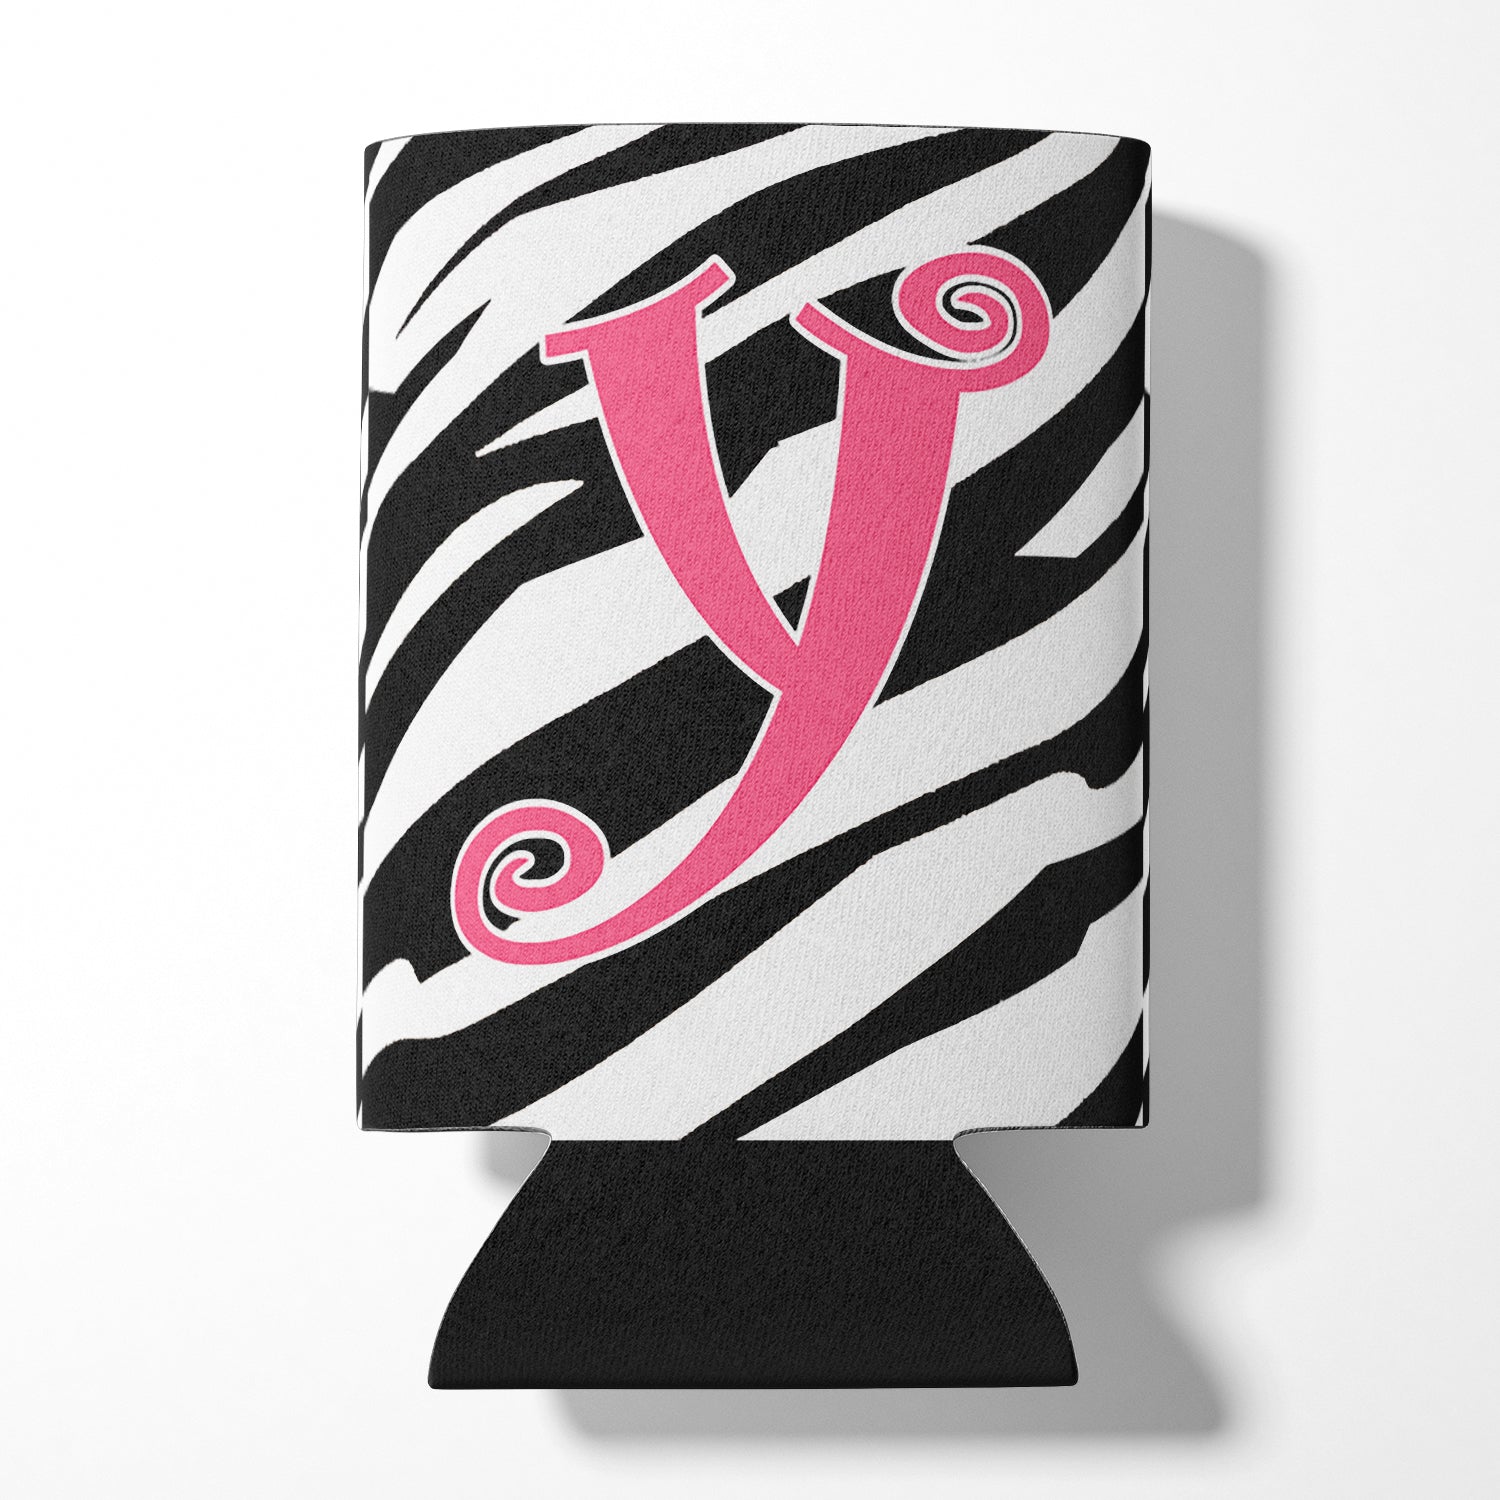 Lettre Y monogramme initial - Zebra Stripe et Pink Can ou Bottle Beverage Insulator Hugger